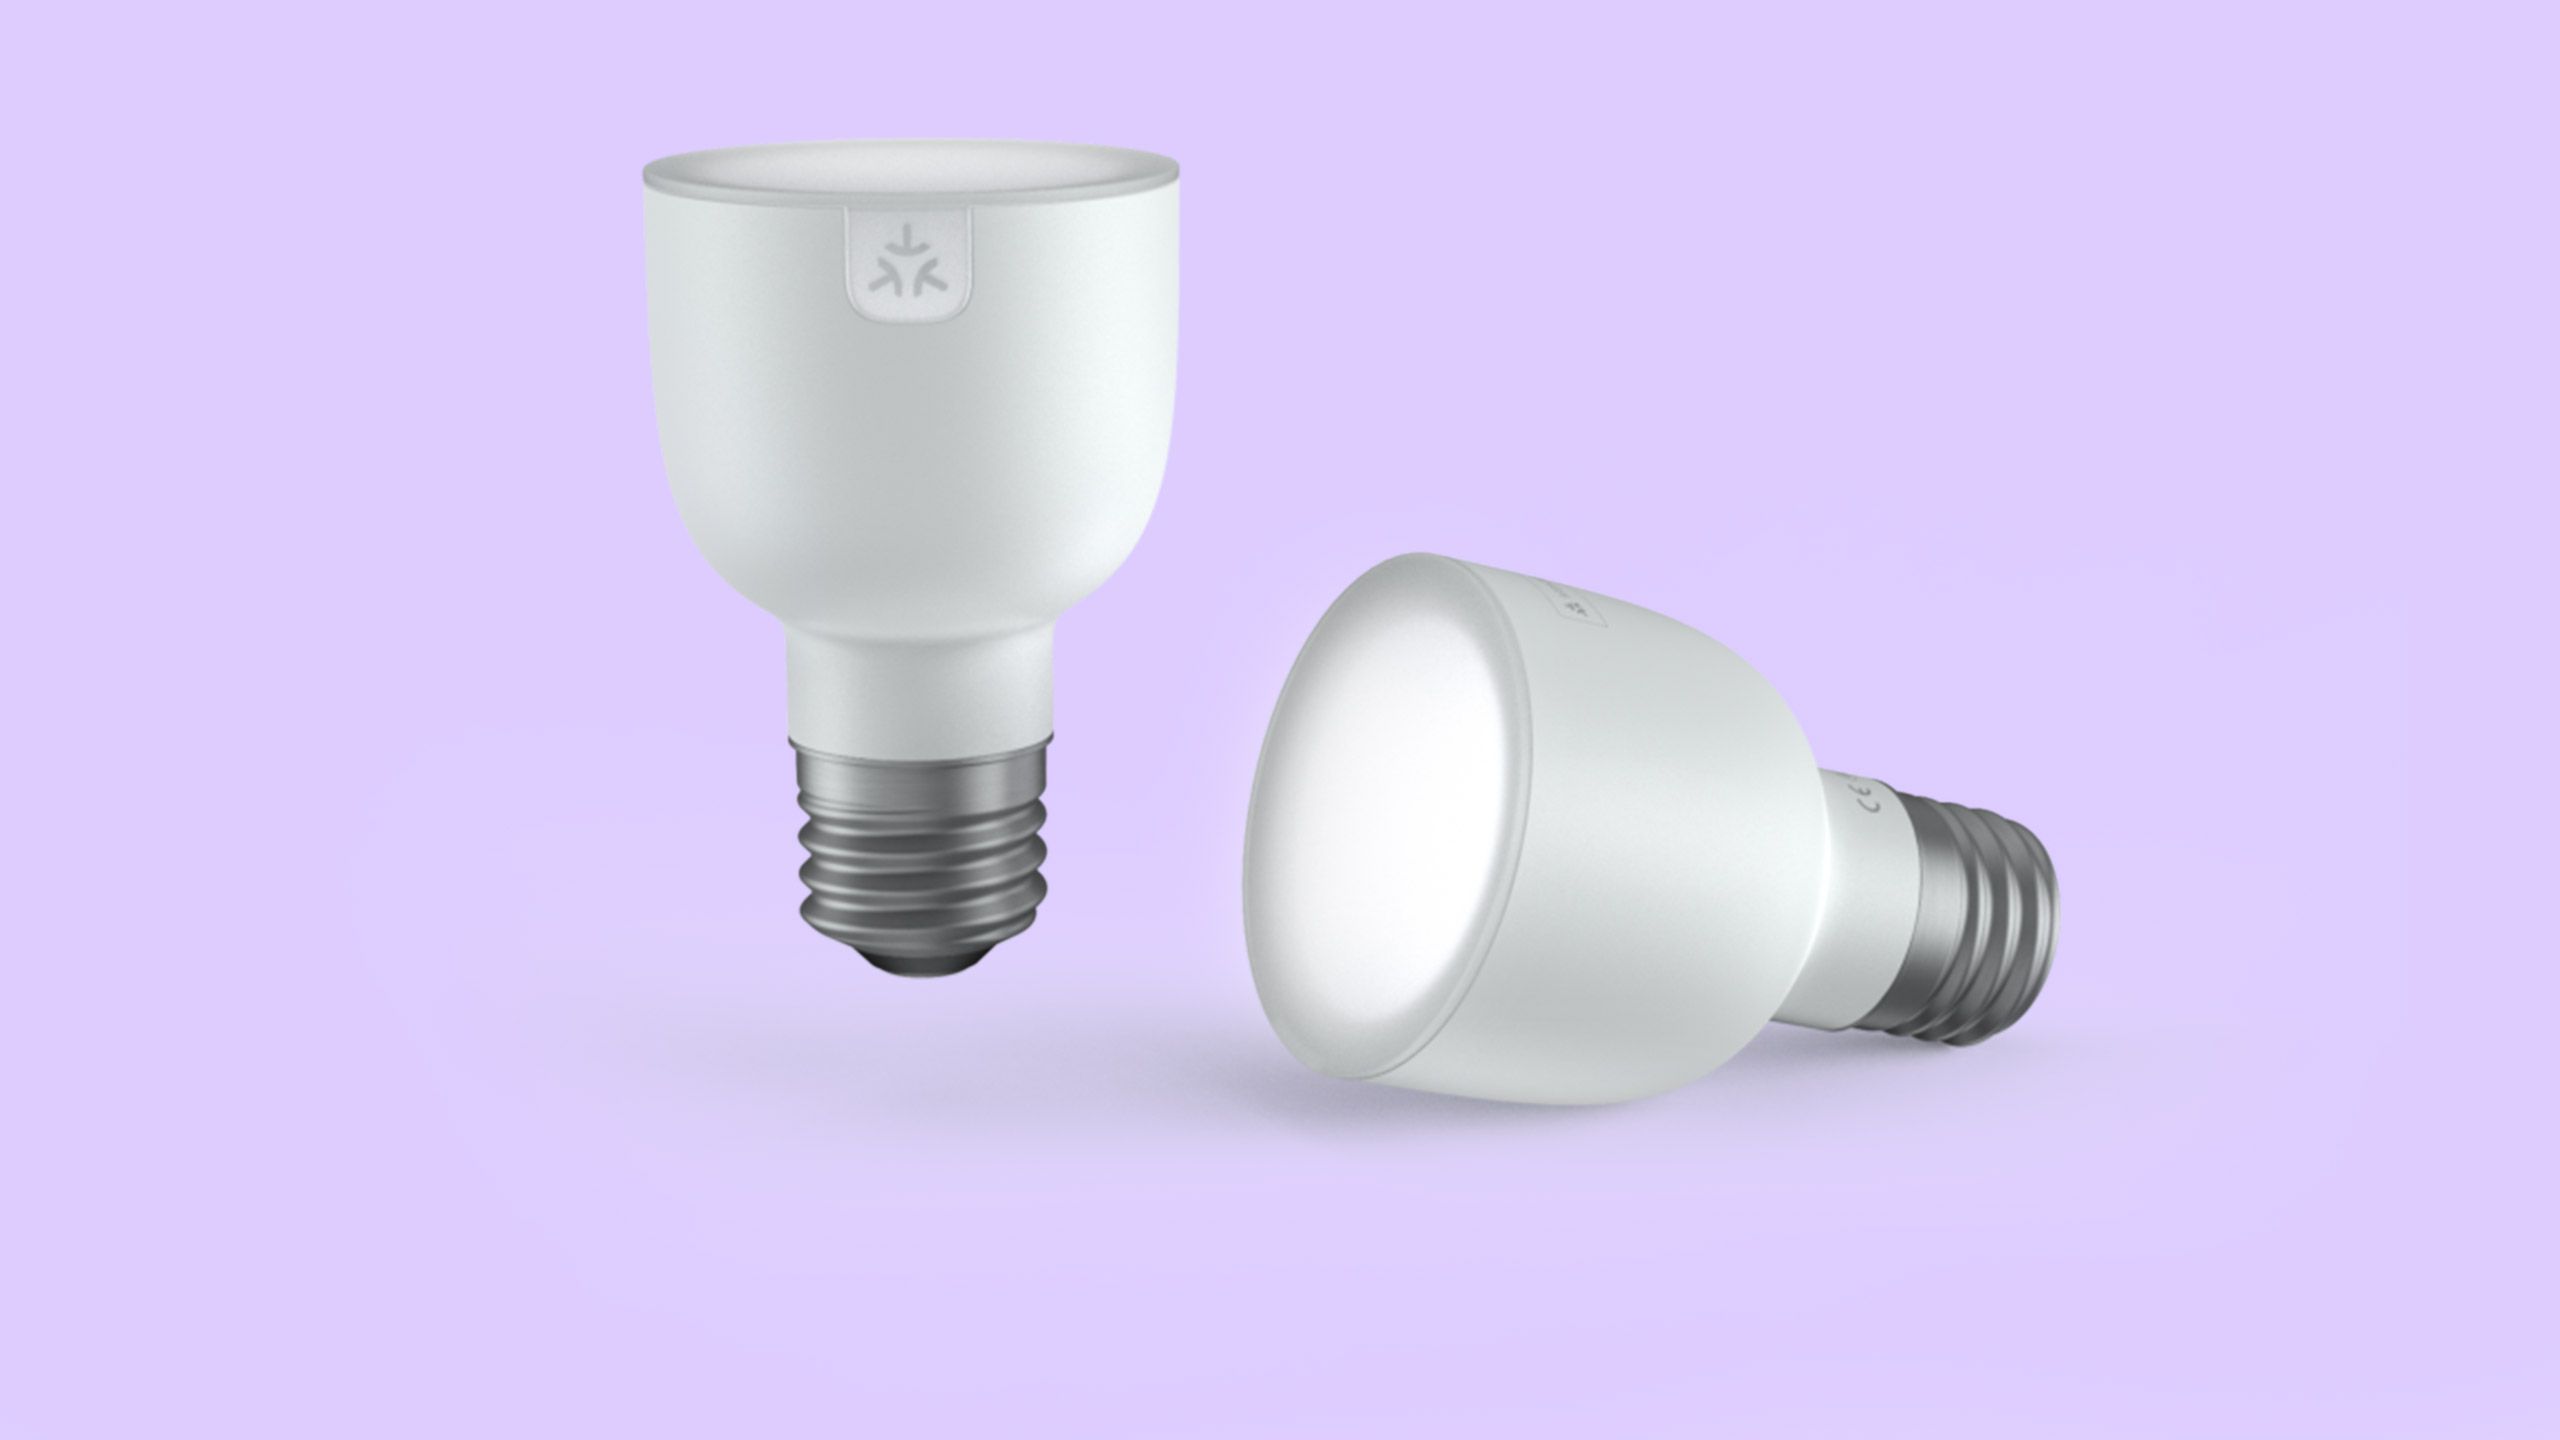 A pair of Matter-compatible lightbulbs.